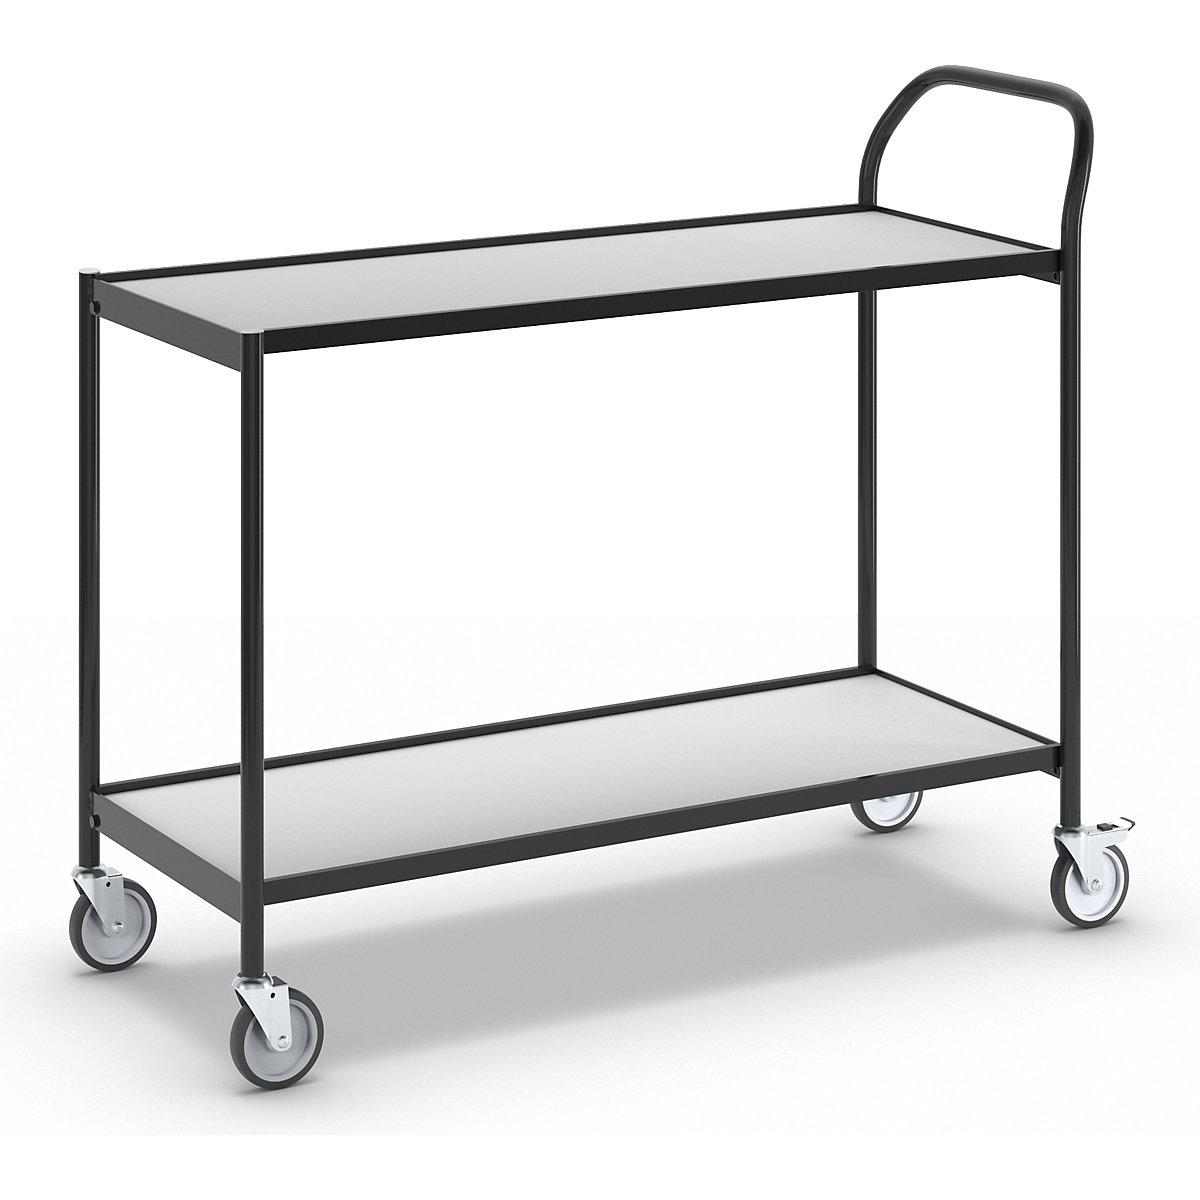 Stolový vozík – HelgeNyberg, 2 etáže, d x š 1000 x 420 mm, černá / šedá-4